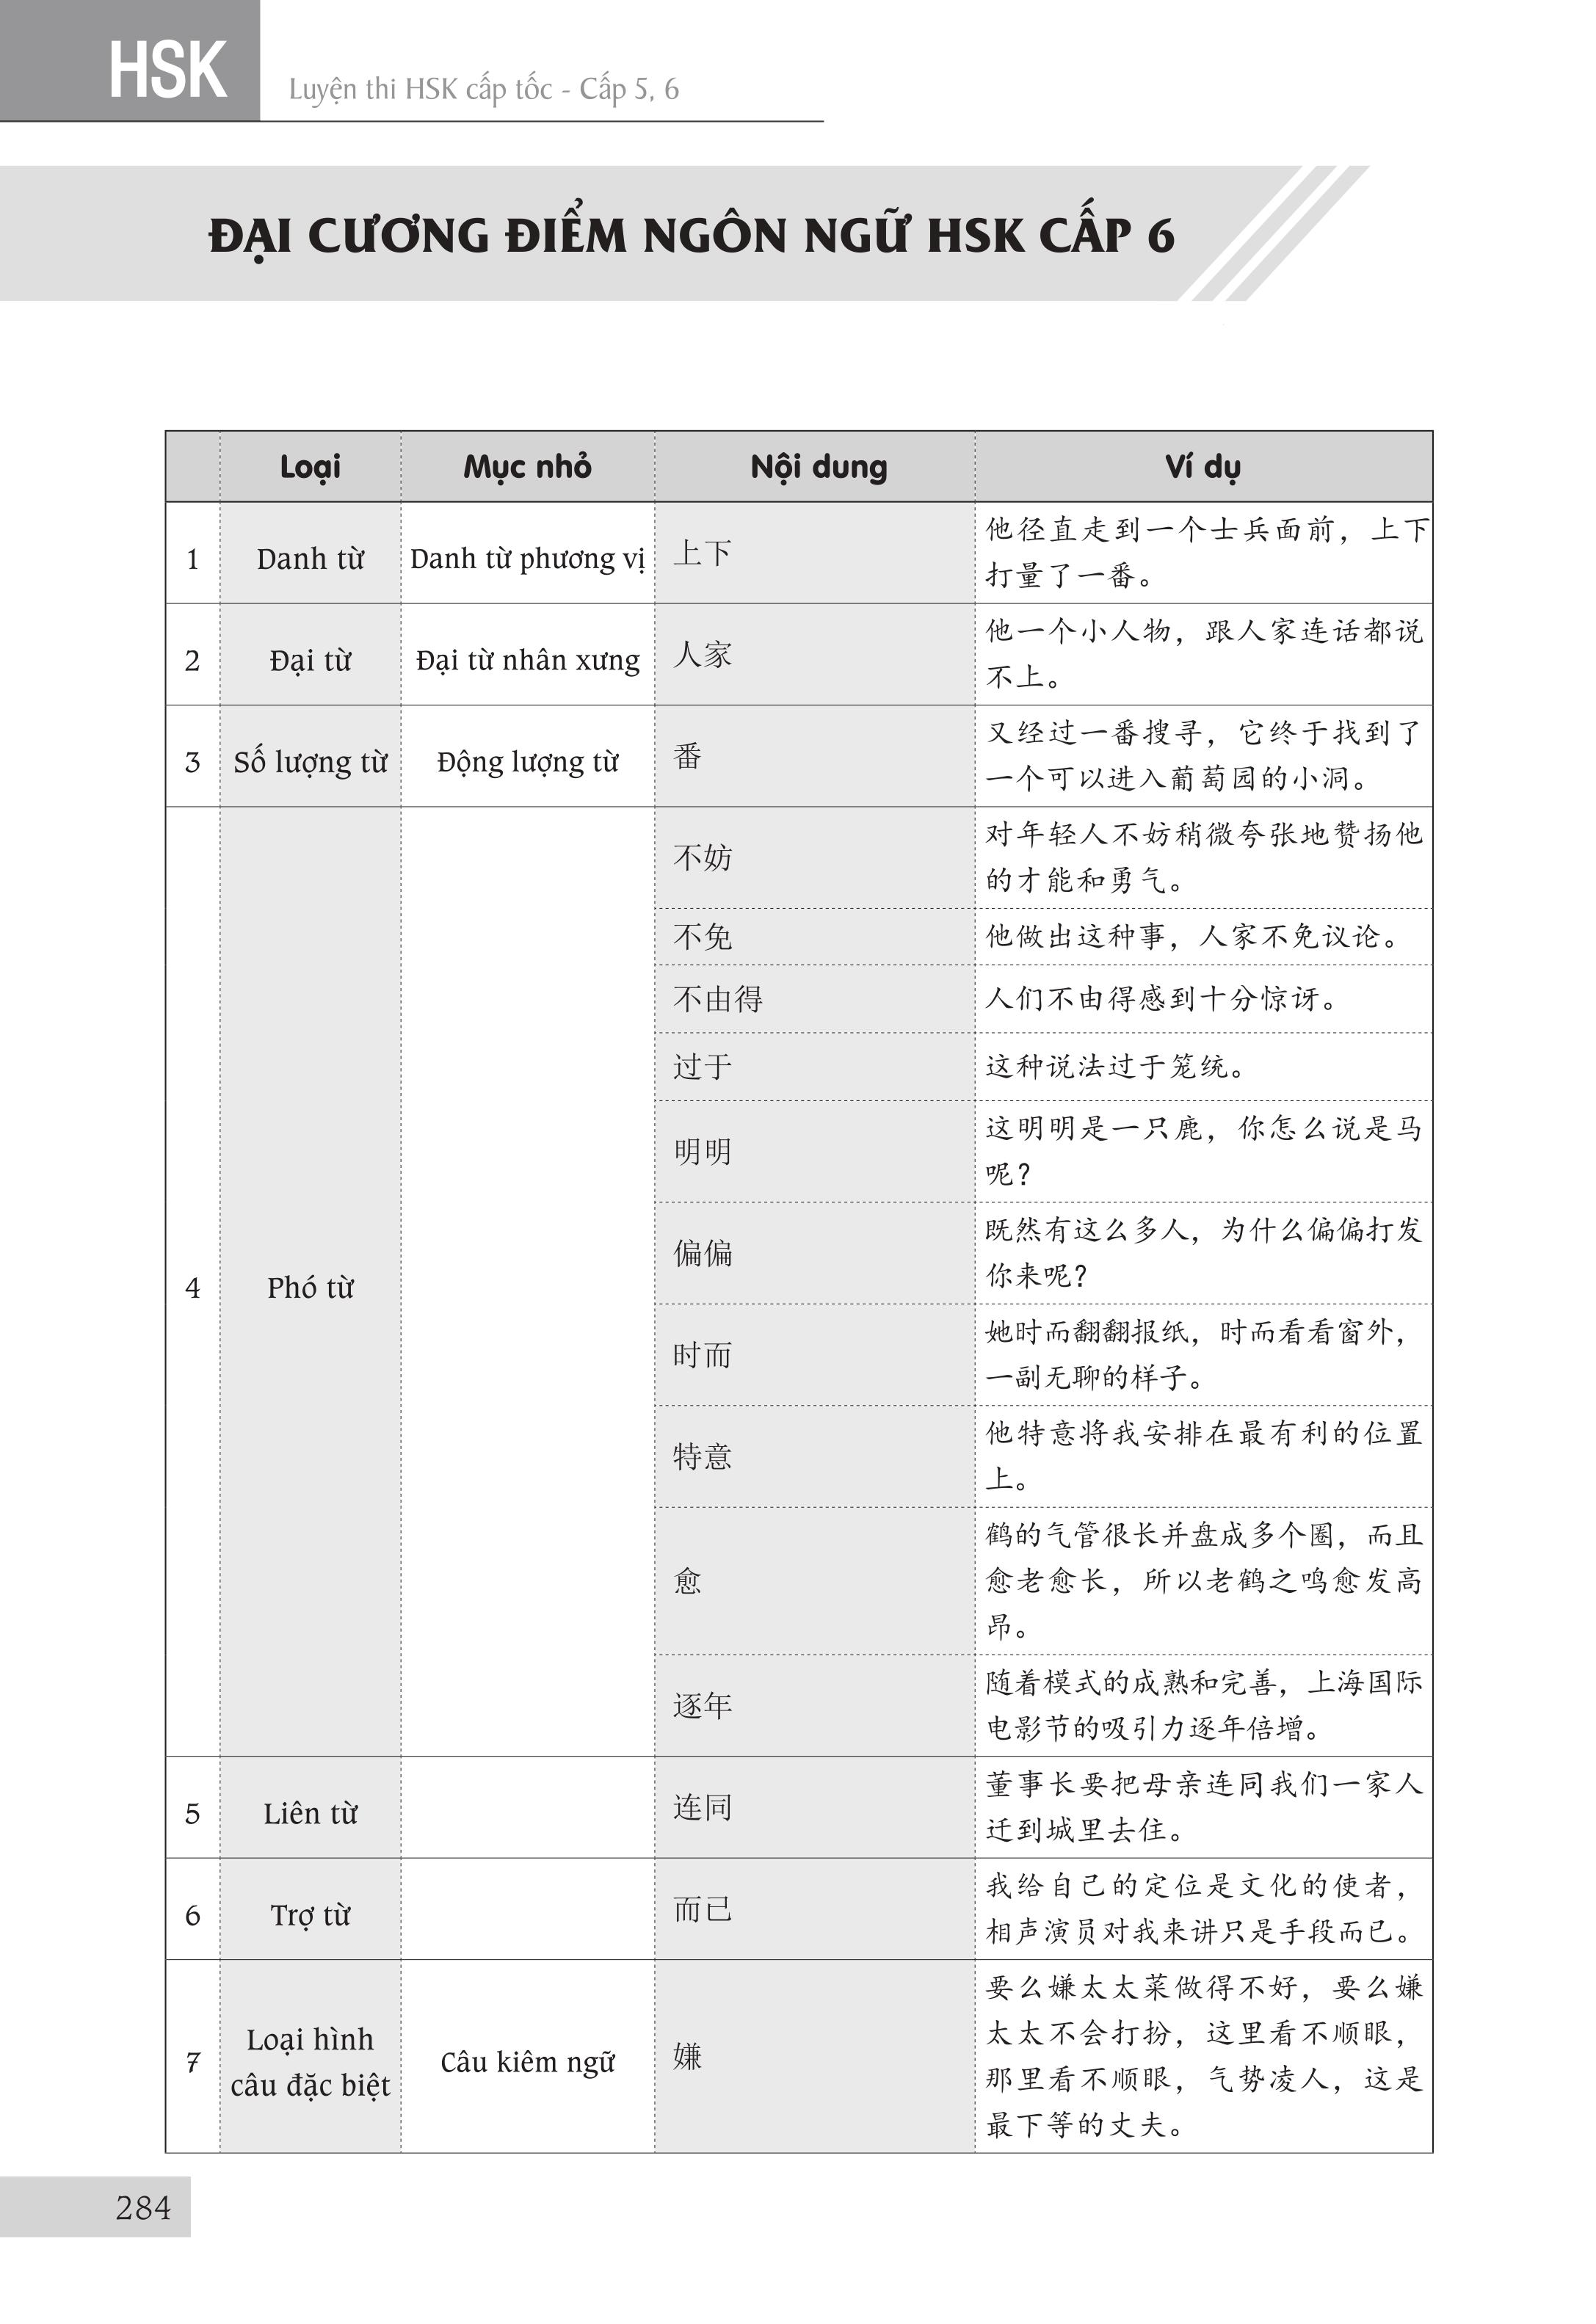 Sách - Combo: Luyện thi HSK cấp tốc tập 3 (tương đương HSK 5+6 kèm CD) + Bài tập luyện dịch tiếng Trung ứng dụng (Sơ -Trung cấp, Giao tiếp HSK có mp3 nghe, có đáp án)+DVD tài liệu